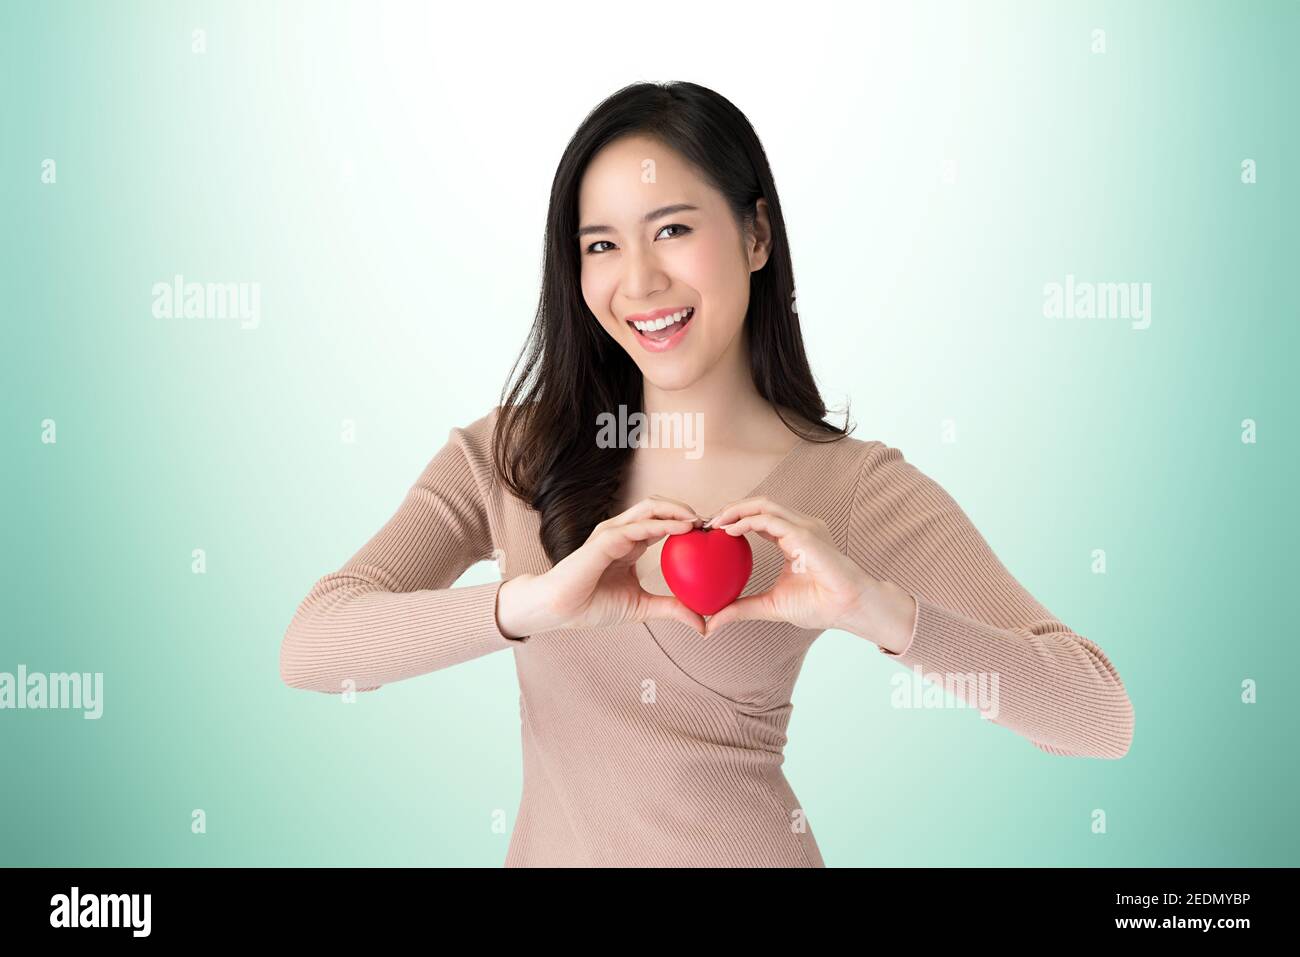 Schöne gesunde lächelnde junge asiatische Frau hält das Herz Form Ball auf türkisgrünen Hintergrund, Studio erschossen Stockfoto